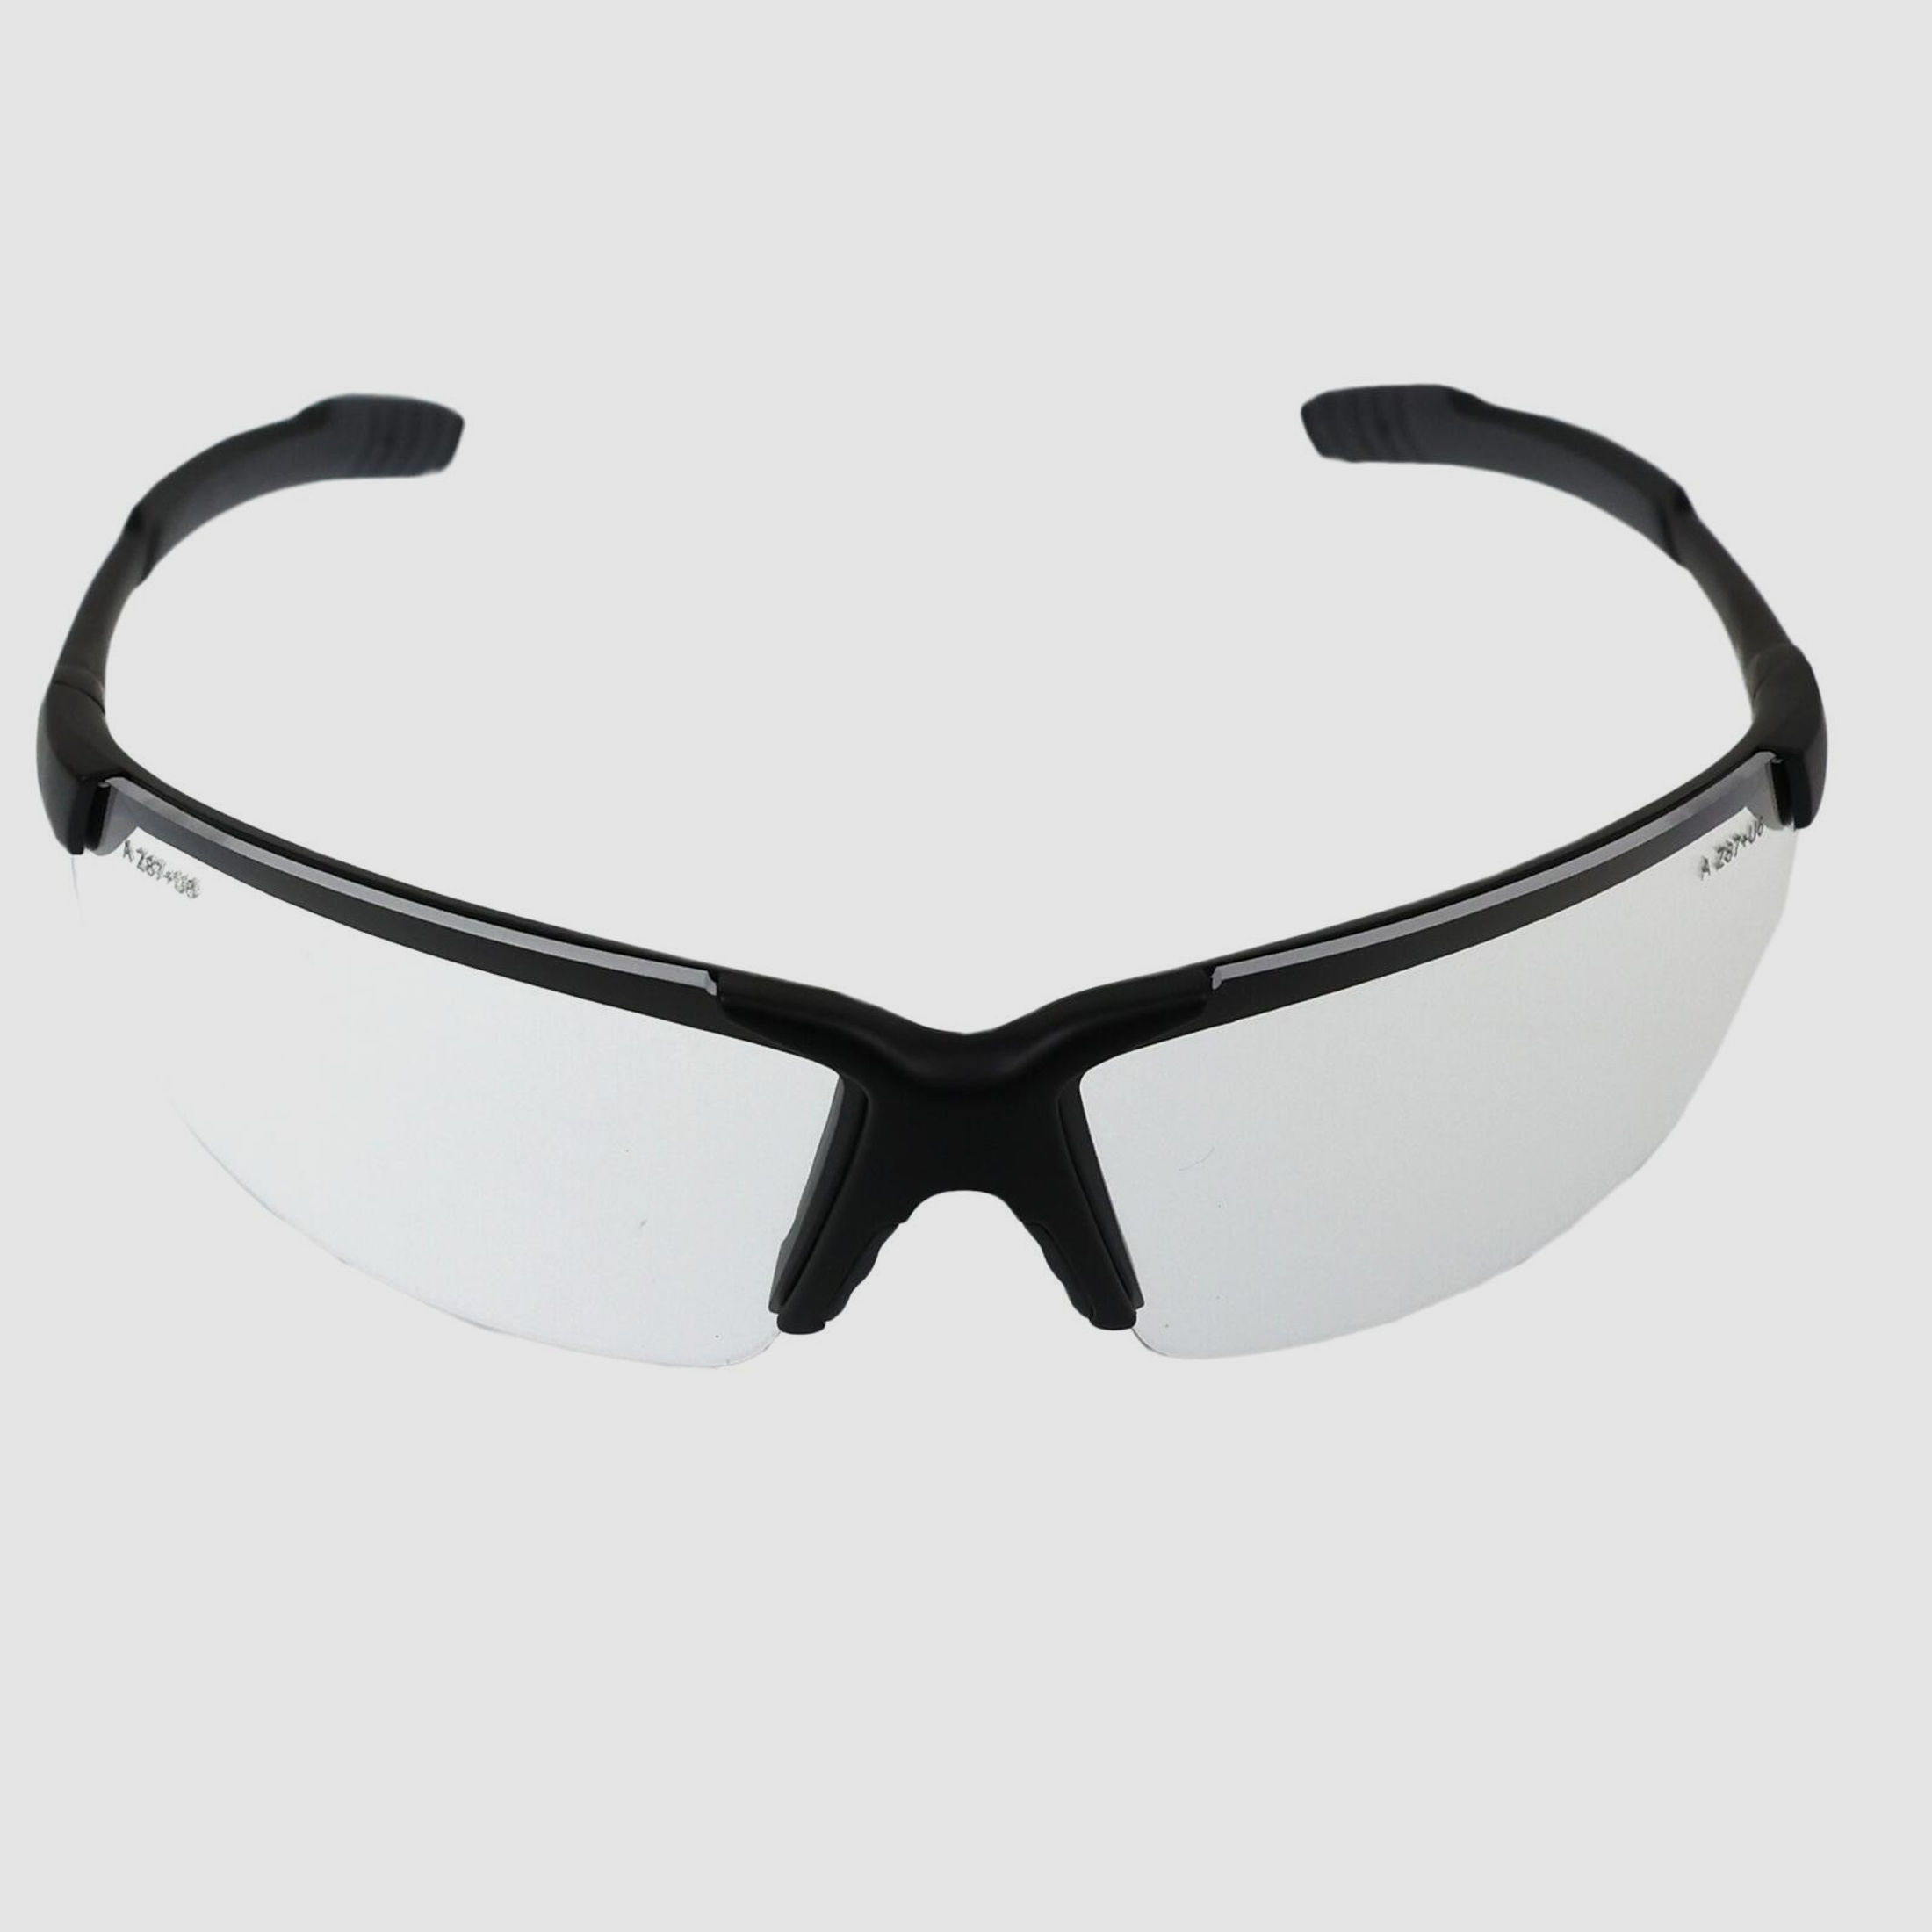 ALLEN - Schießbrille / Schutzbrille klar